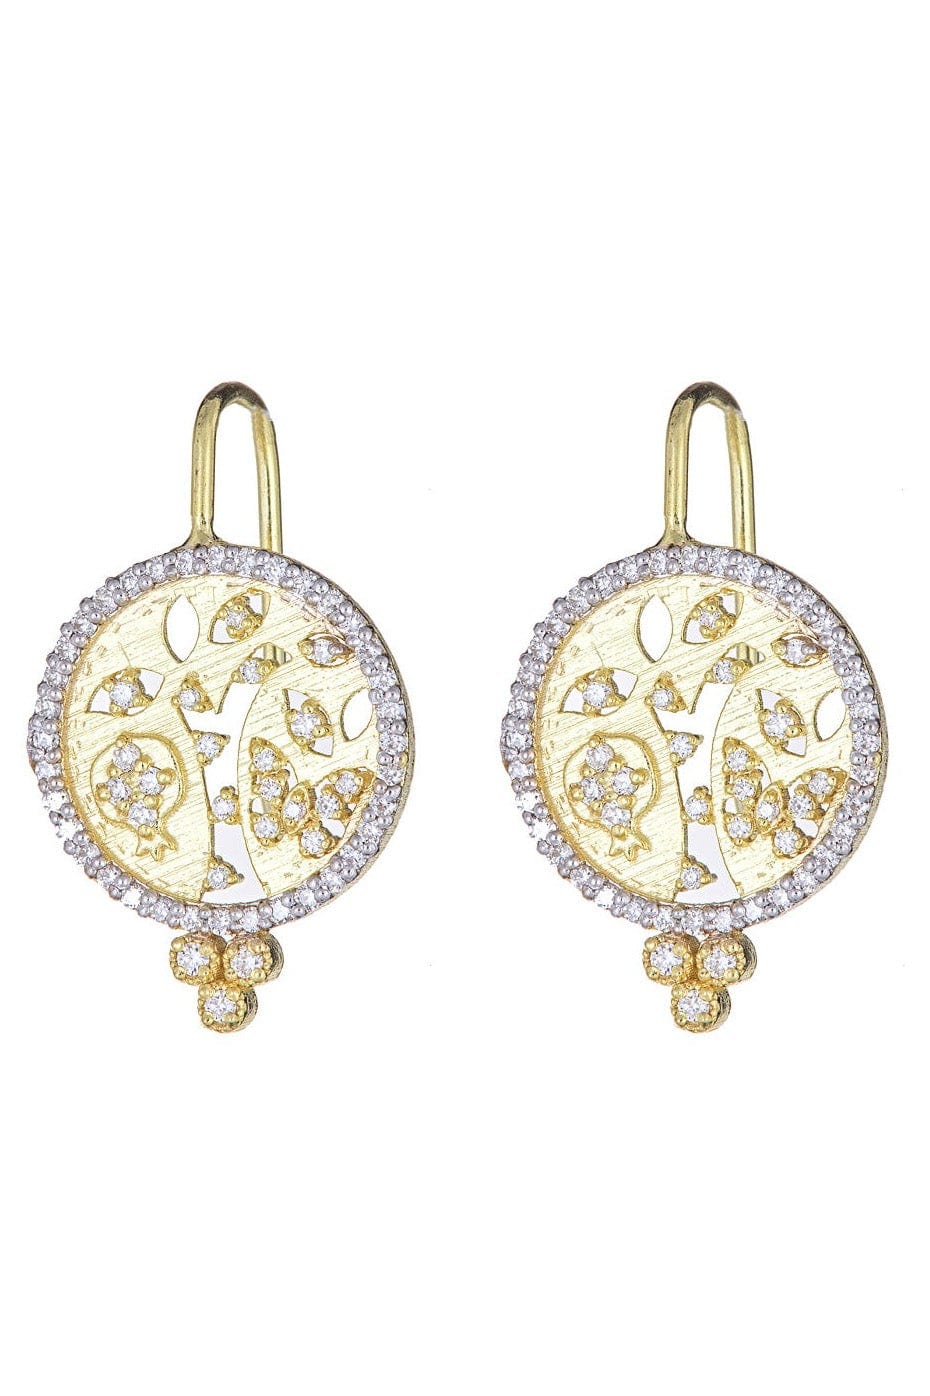 TANYA FARAH-Tree of Life Cutout Diamond Earrings-YELLOW GOLD